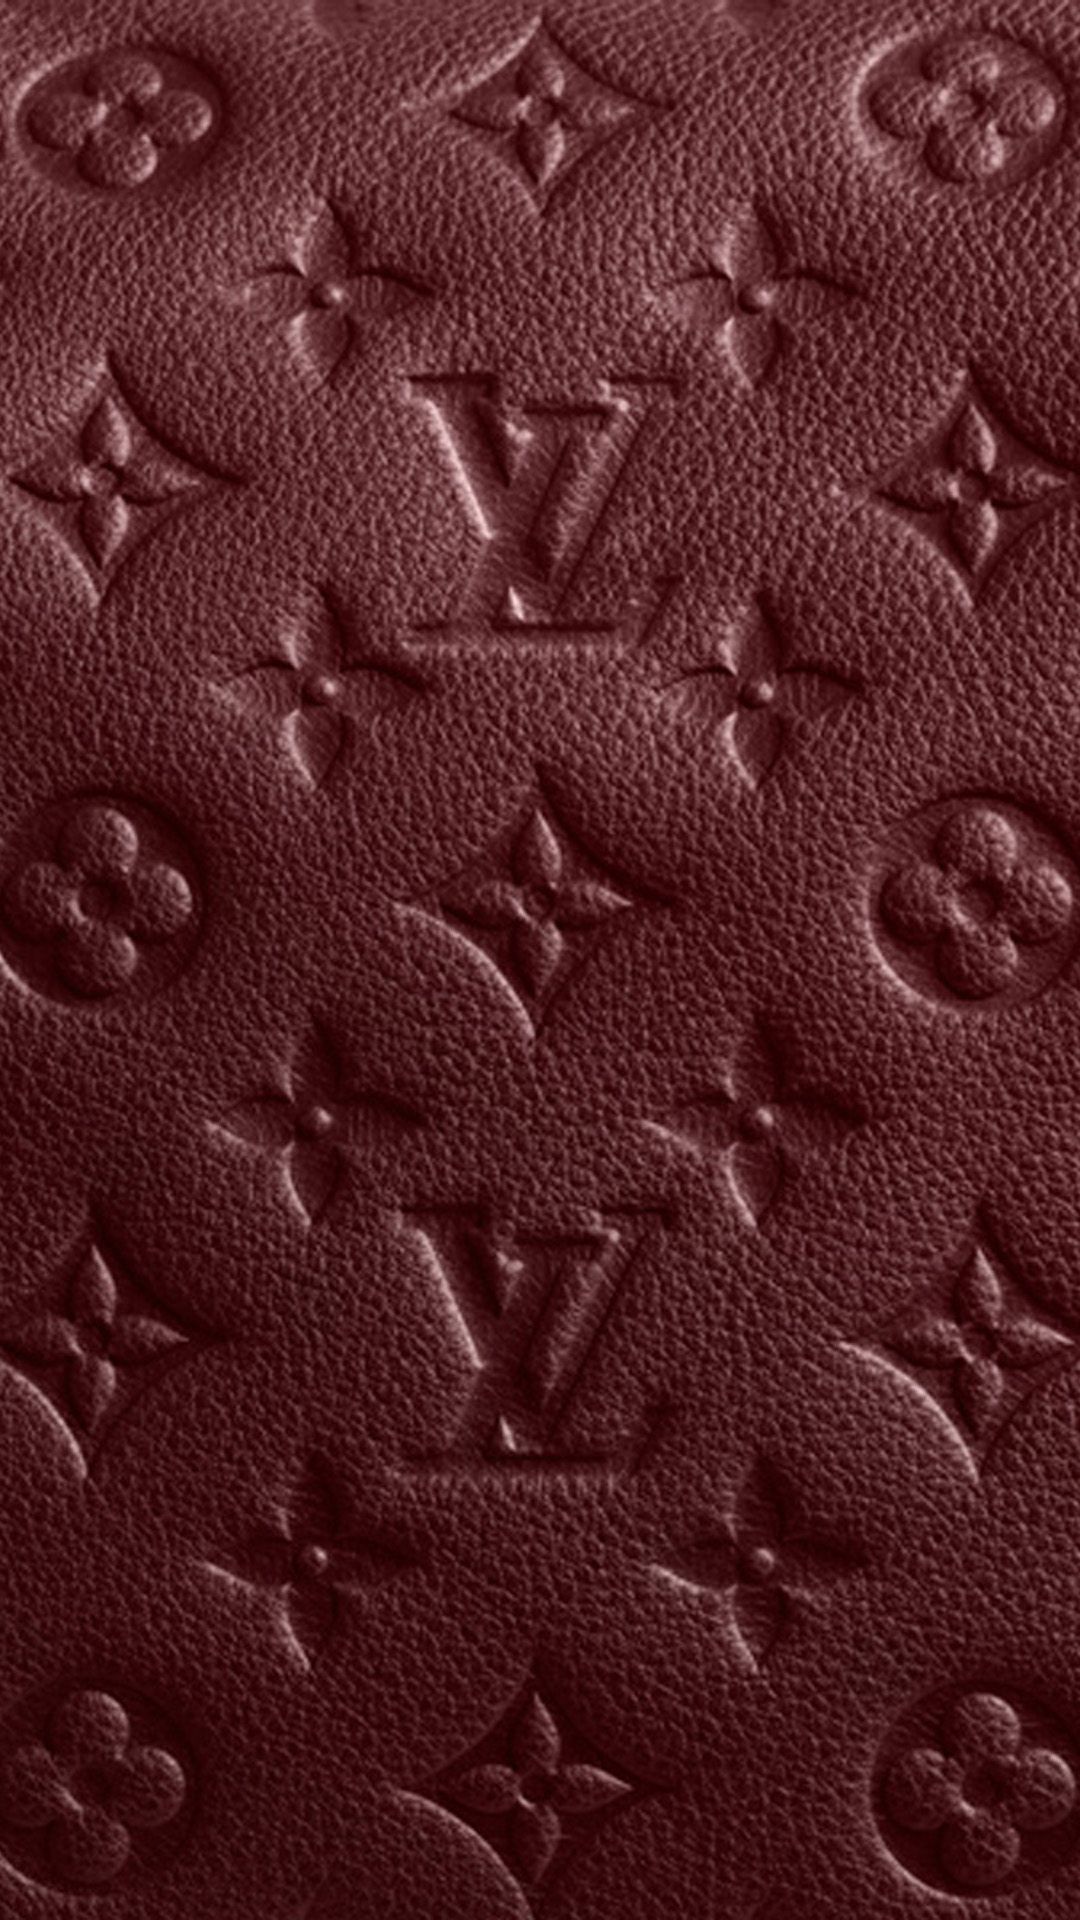 Burgundy Iphone 6 Wallpaper - Fond D Écran Louis Vuitton , HD Wallpaper & Backgrounds